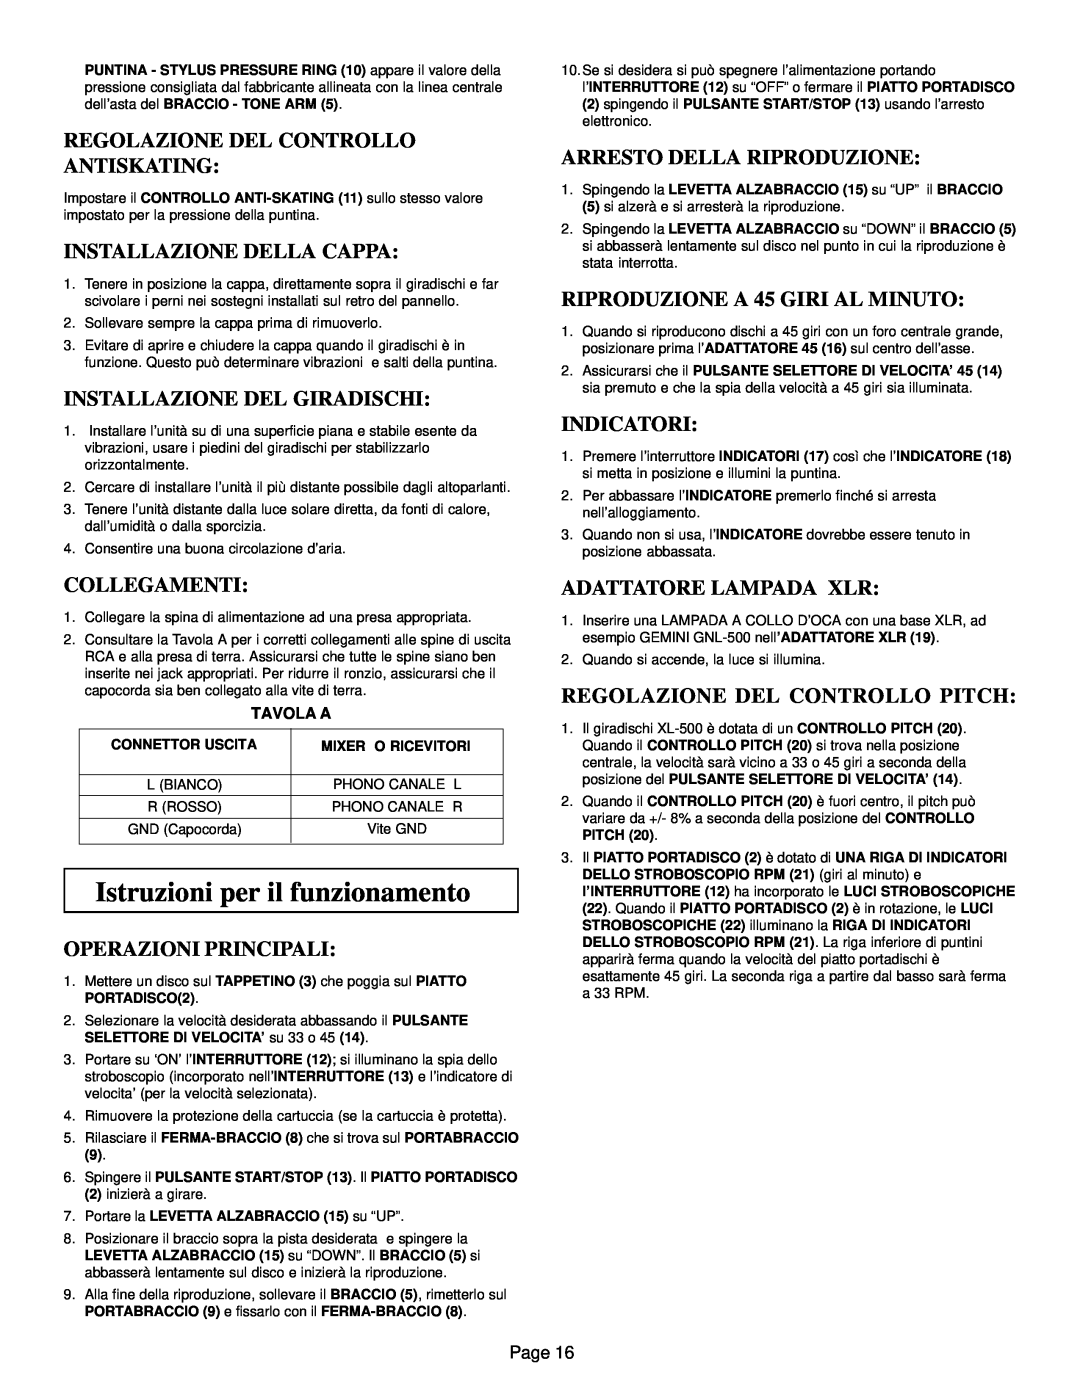 Gemini XL-500 manual Istruzioni per il funzionamento, Regolazione Del Controllo Antiskating, Installazione Della Cappa 